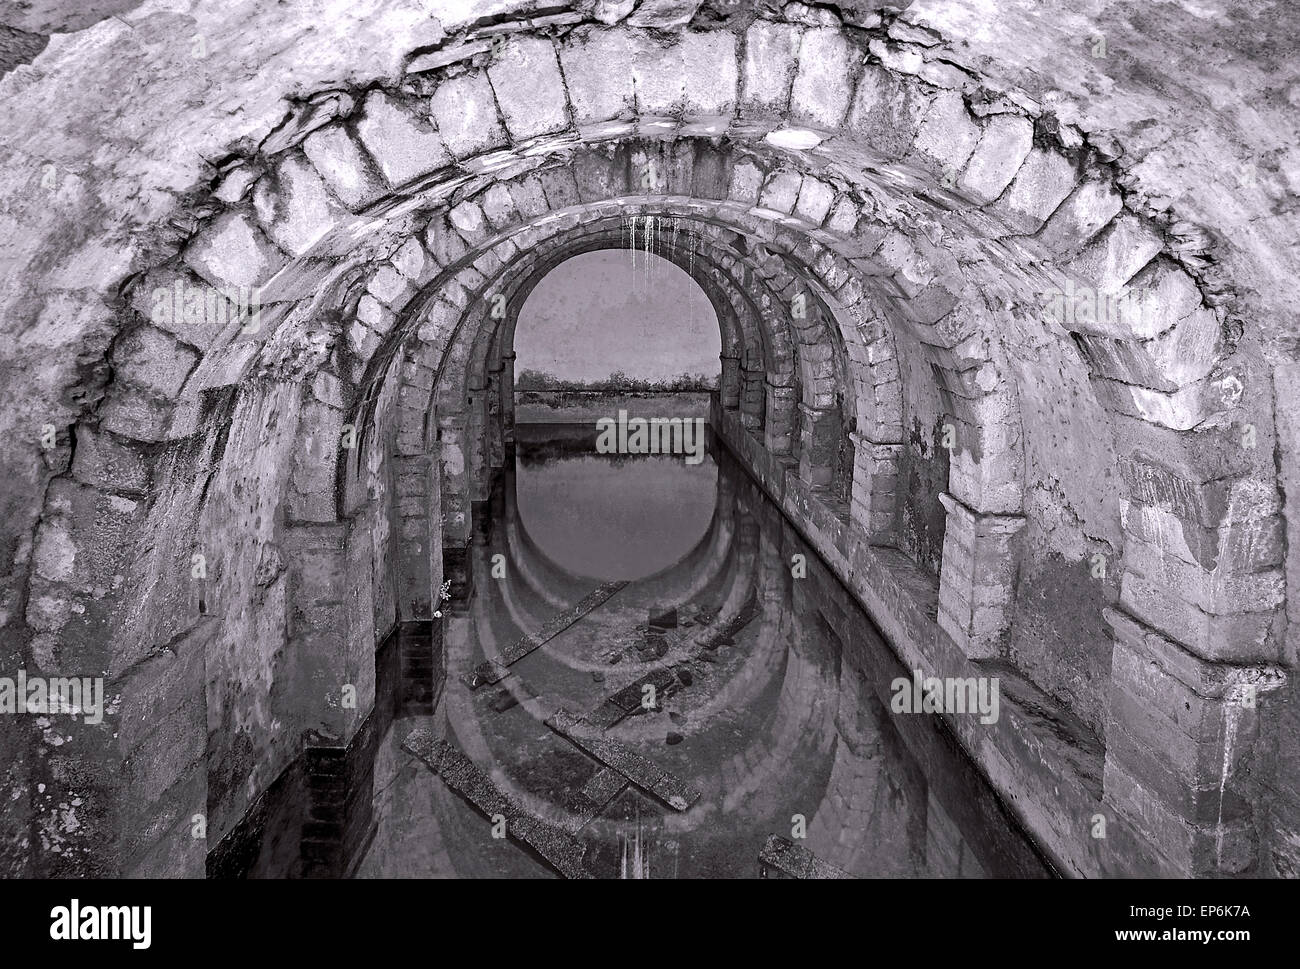 Portugal, Alentejo: Medieval cistern in the historic village of Monsaraz Stock Photo